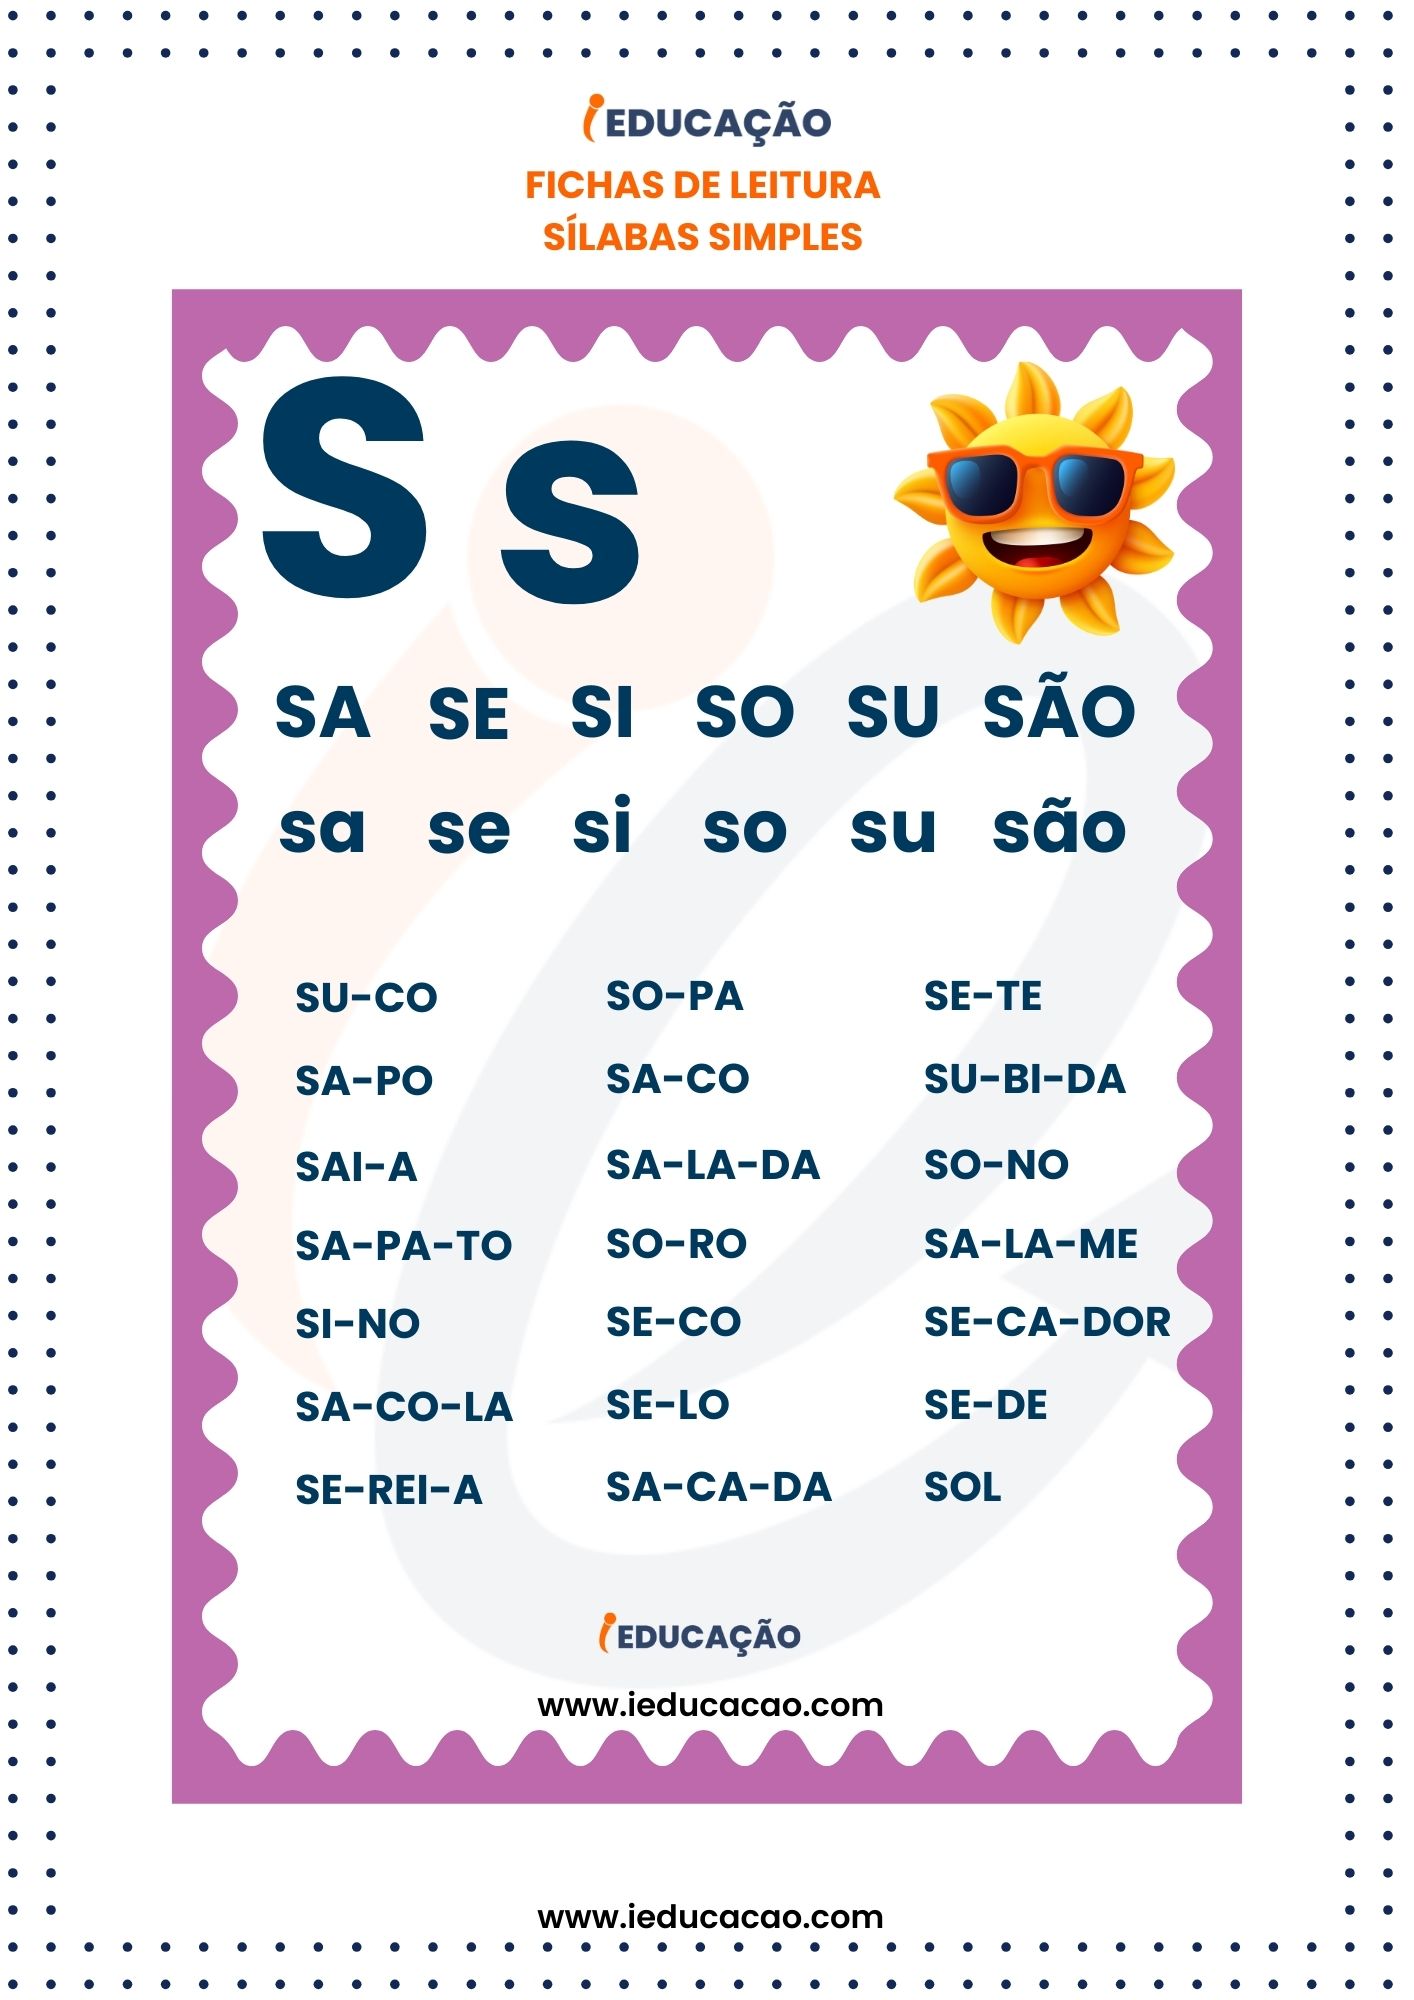 Fichas de Leitura Silabas Simples - silabas Sa se si so su